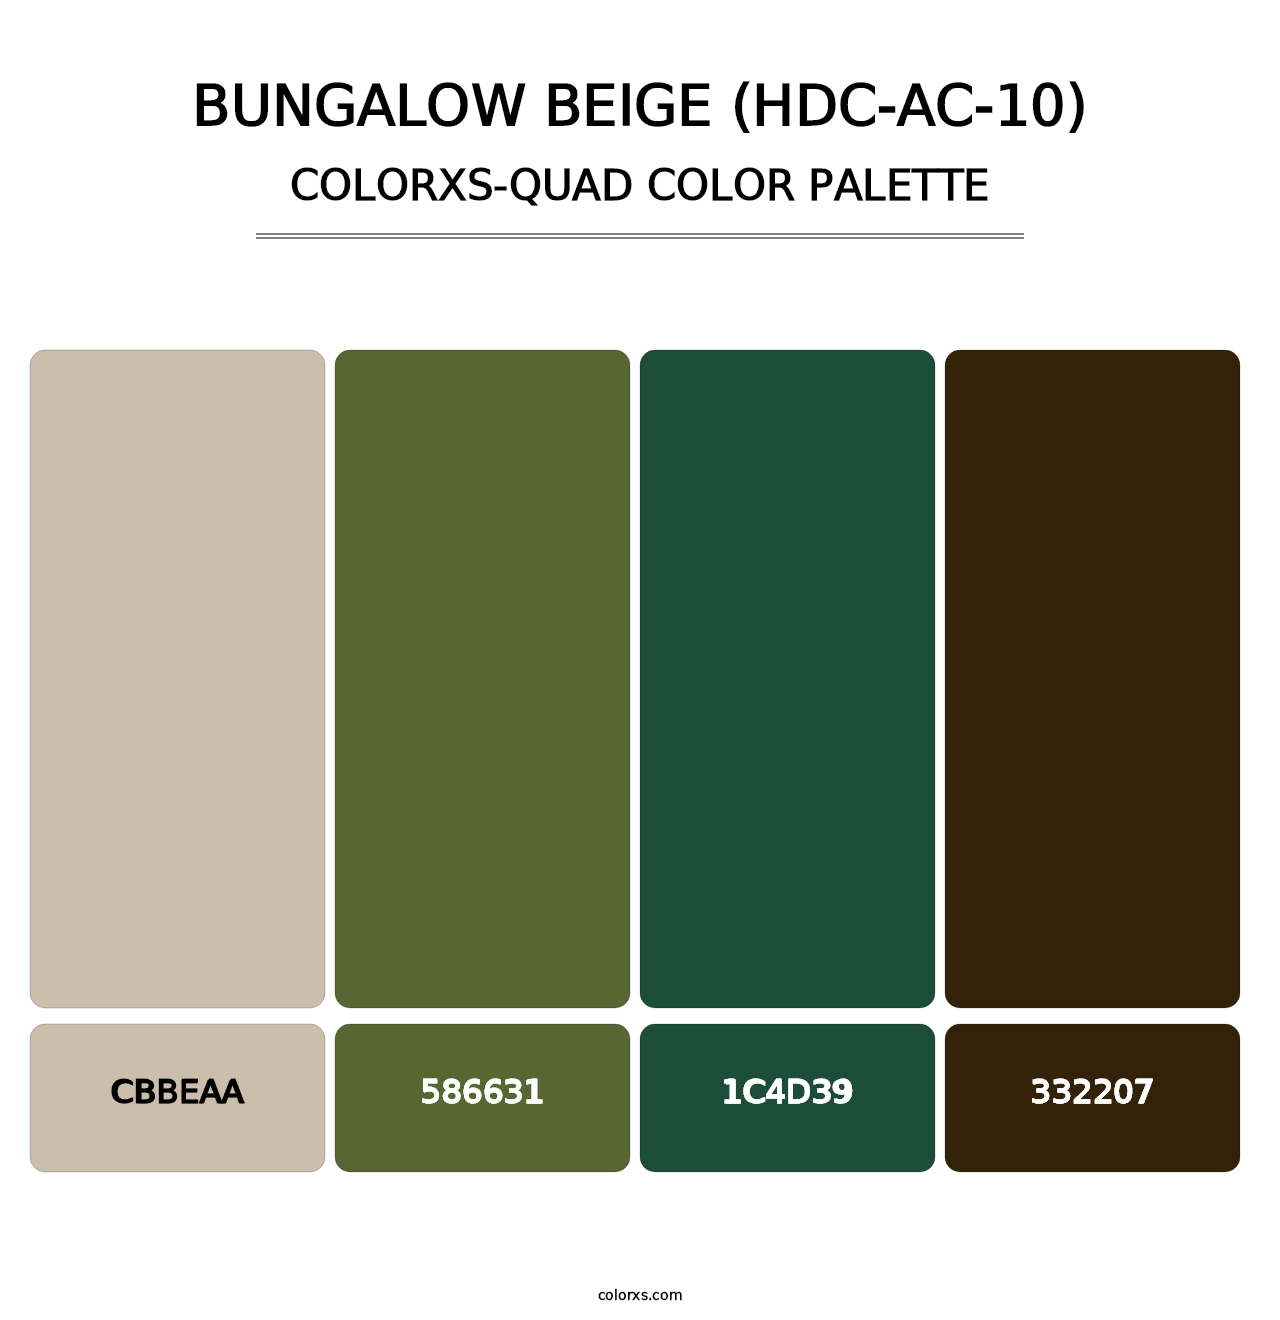 Bungalow Beige (HDC-AC-10) - Colorxs Quad Palette